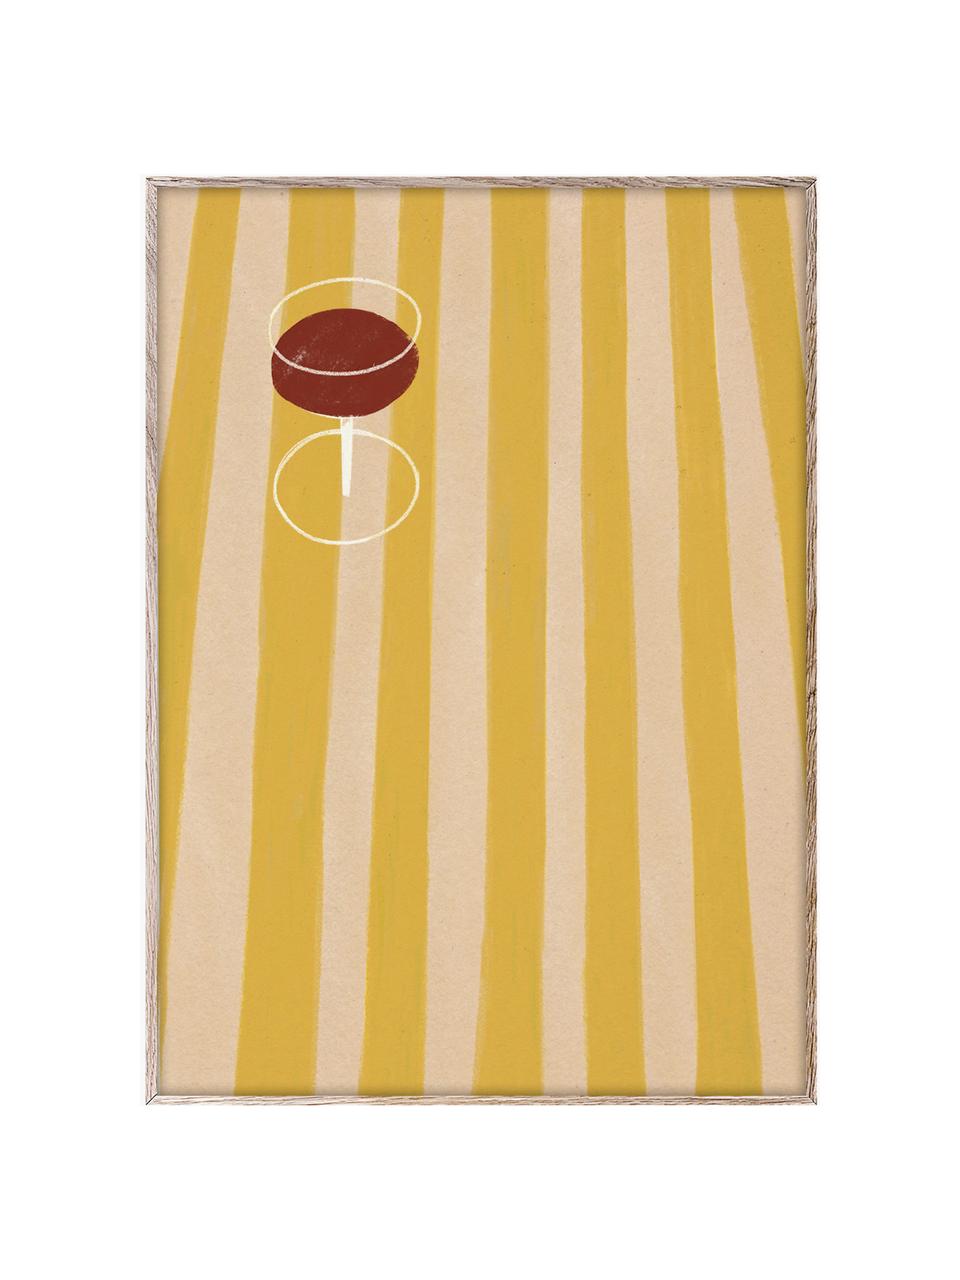 Plakát SDO 04, 210g matný papír Hahnemühle, digitální tisk s 10 barvami odolnými vůči UV záření, Žlutá, béžová, vínově červená, Š 30 cm, V 40 cm